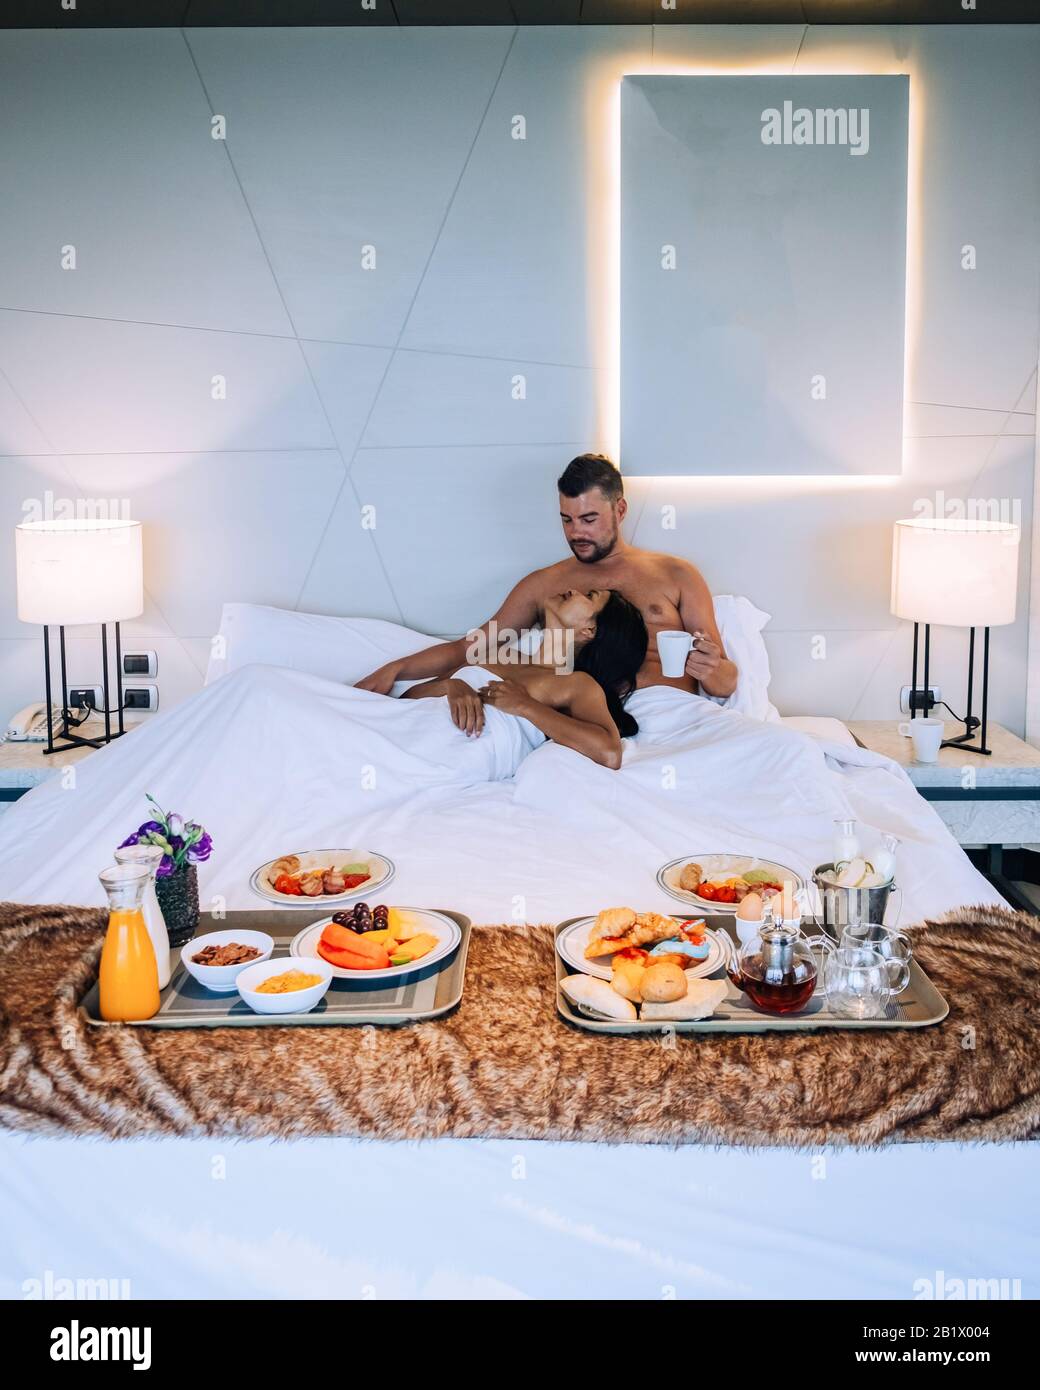 Ein Paar frühstücken im Bett, Männer und Frauen im Luxuszimmer und ein  weißes Bett mit Frühstück im Bett Stockfotografie - Alamy